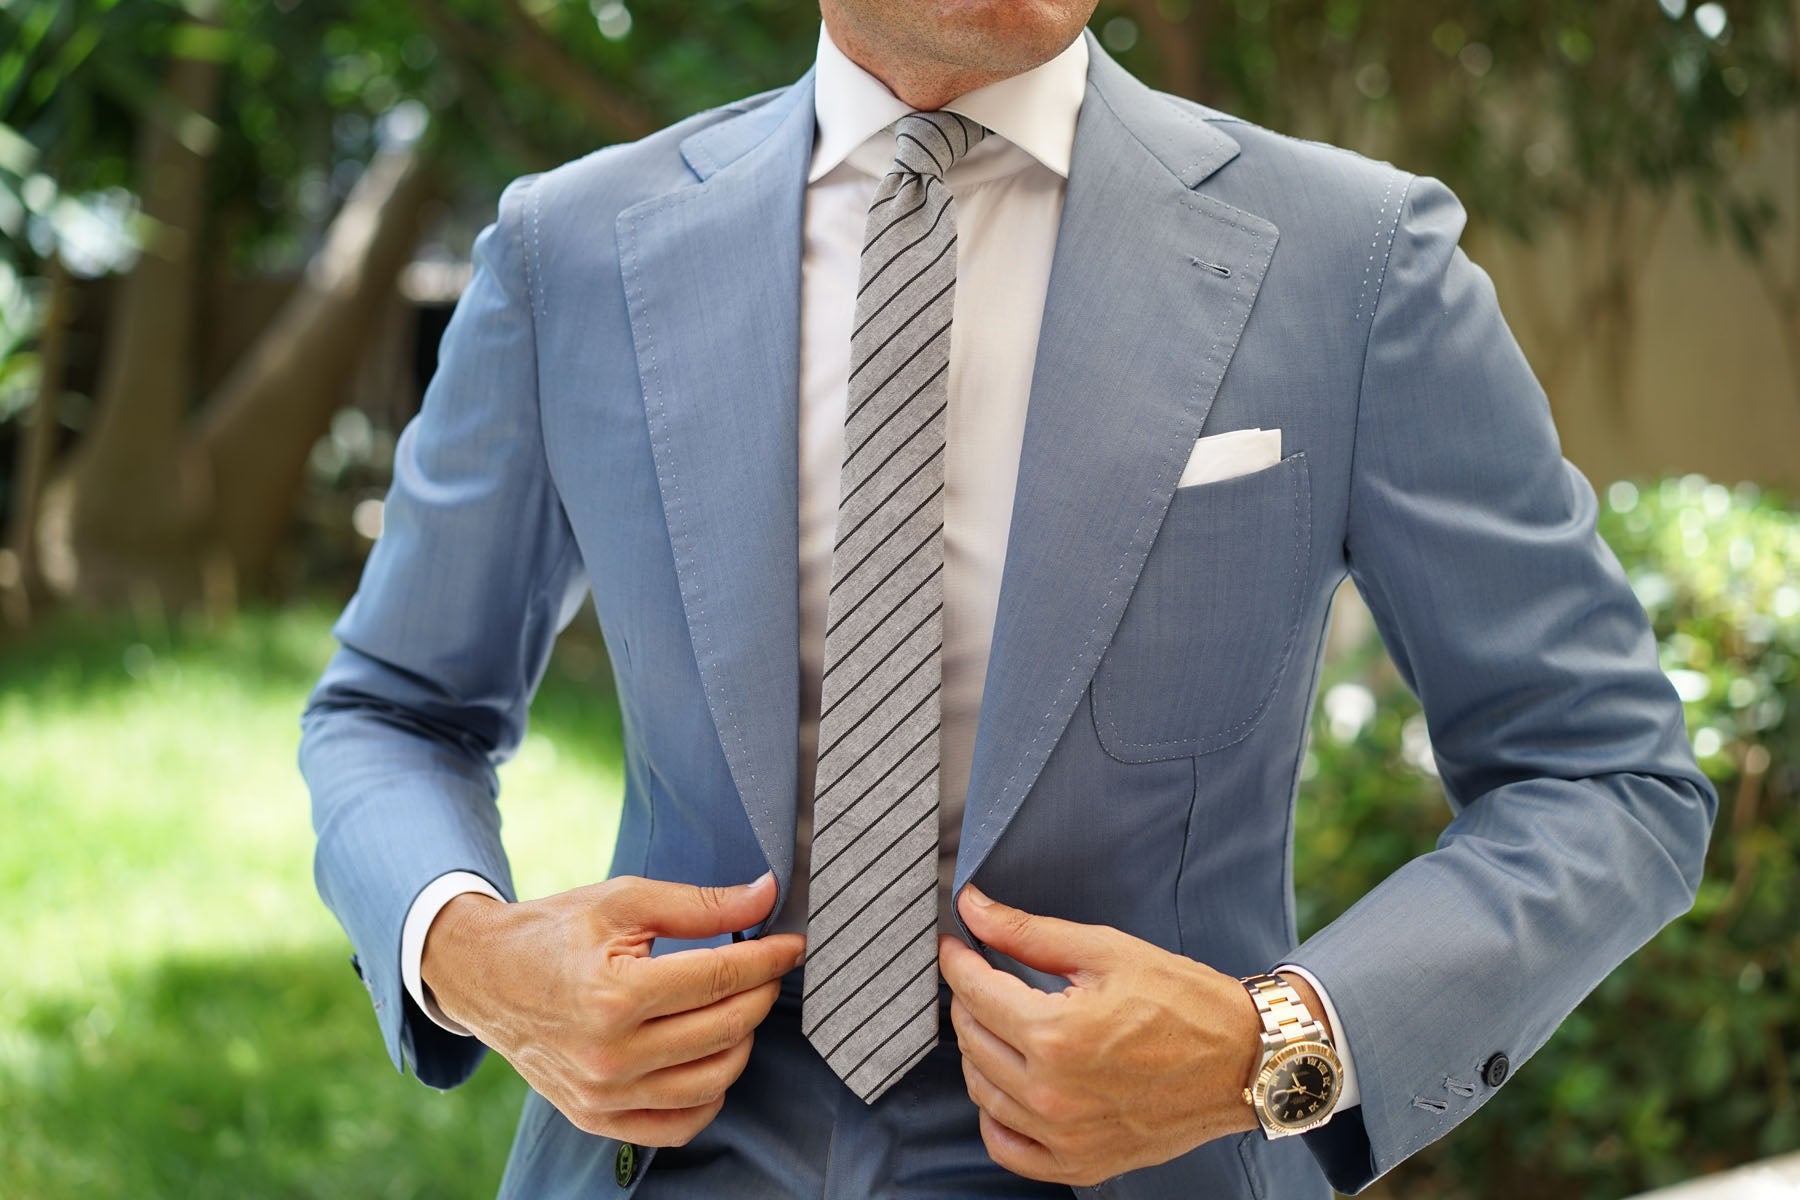 Ash Gray Pinstripe Skinny Tie | Men's Grey Striped Slim Ties Neckties ...